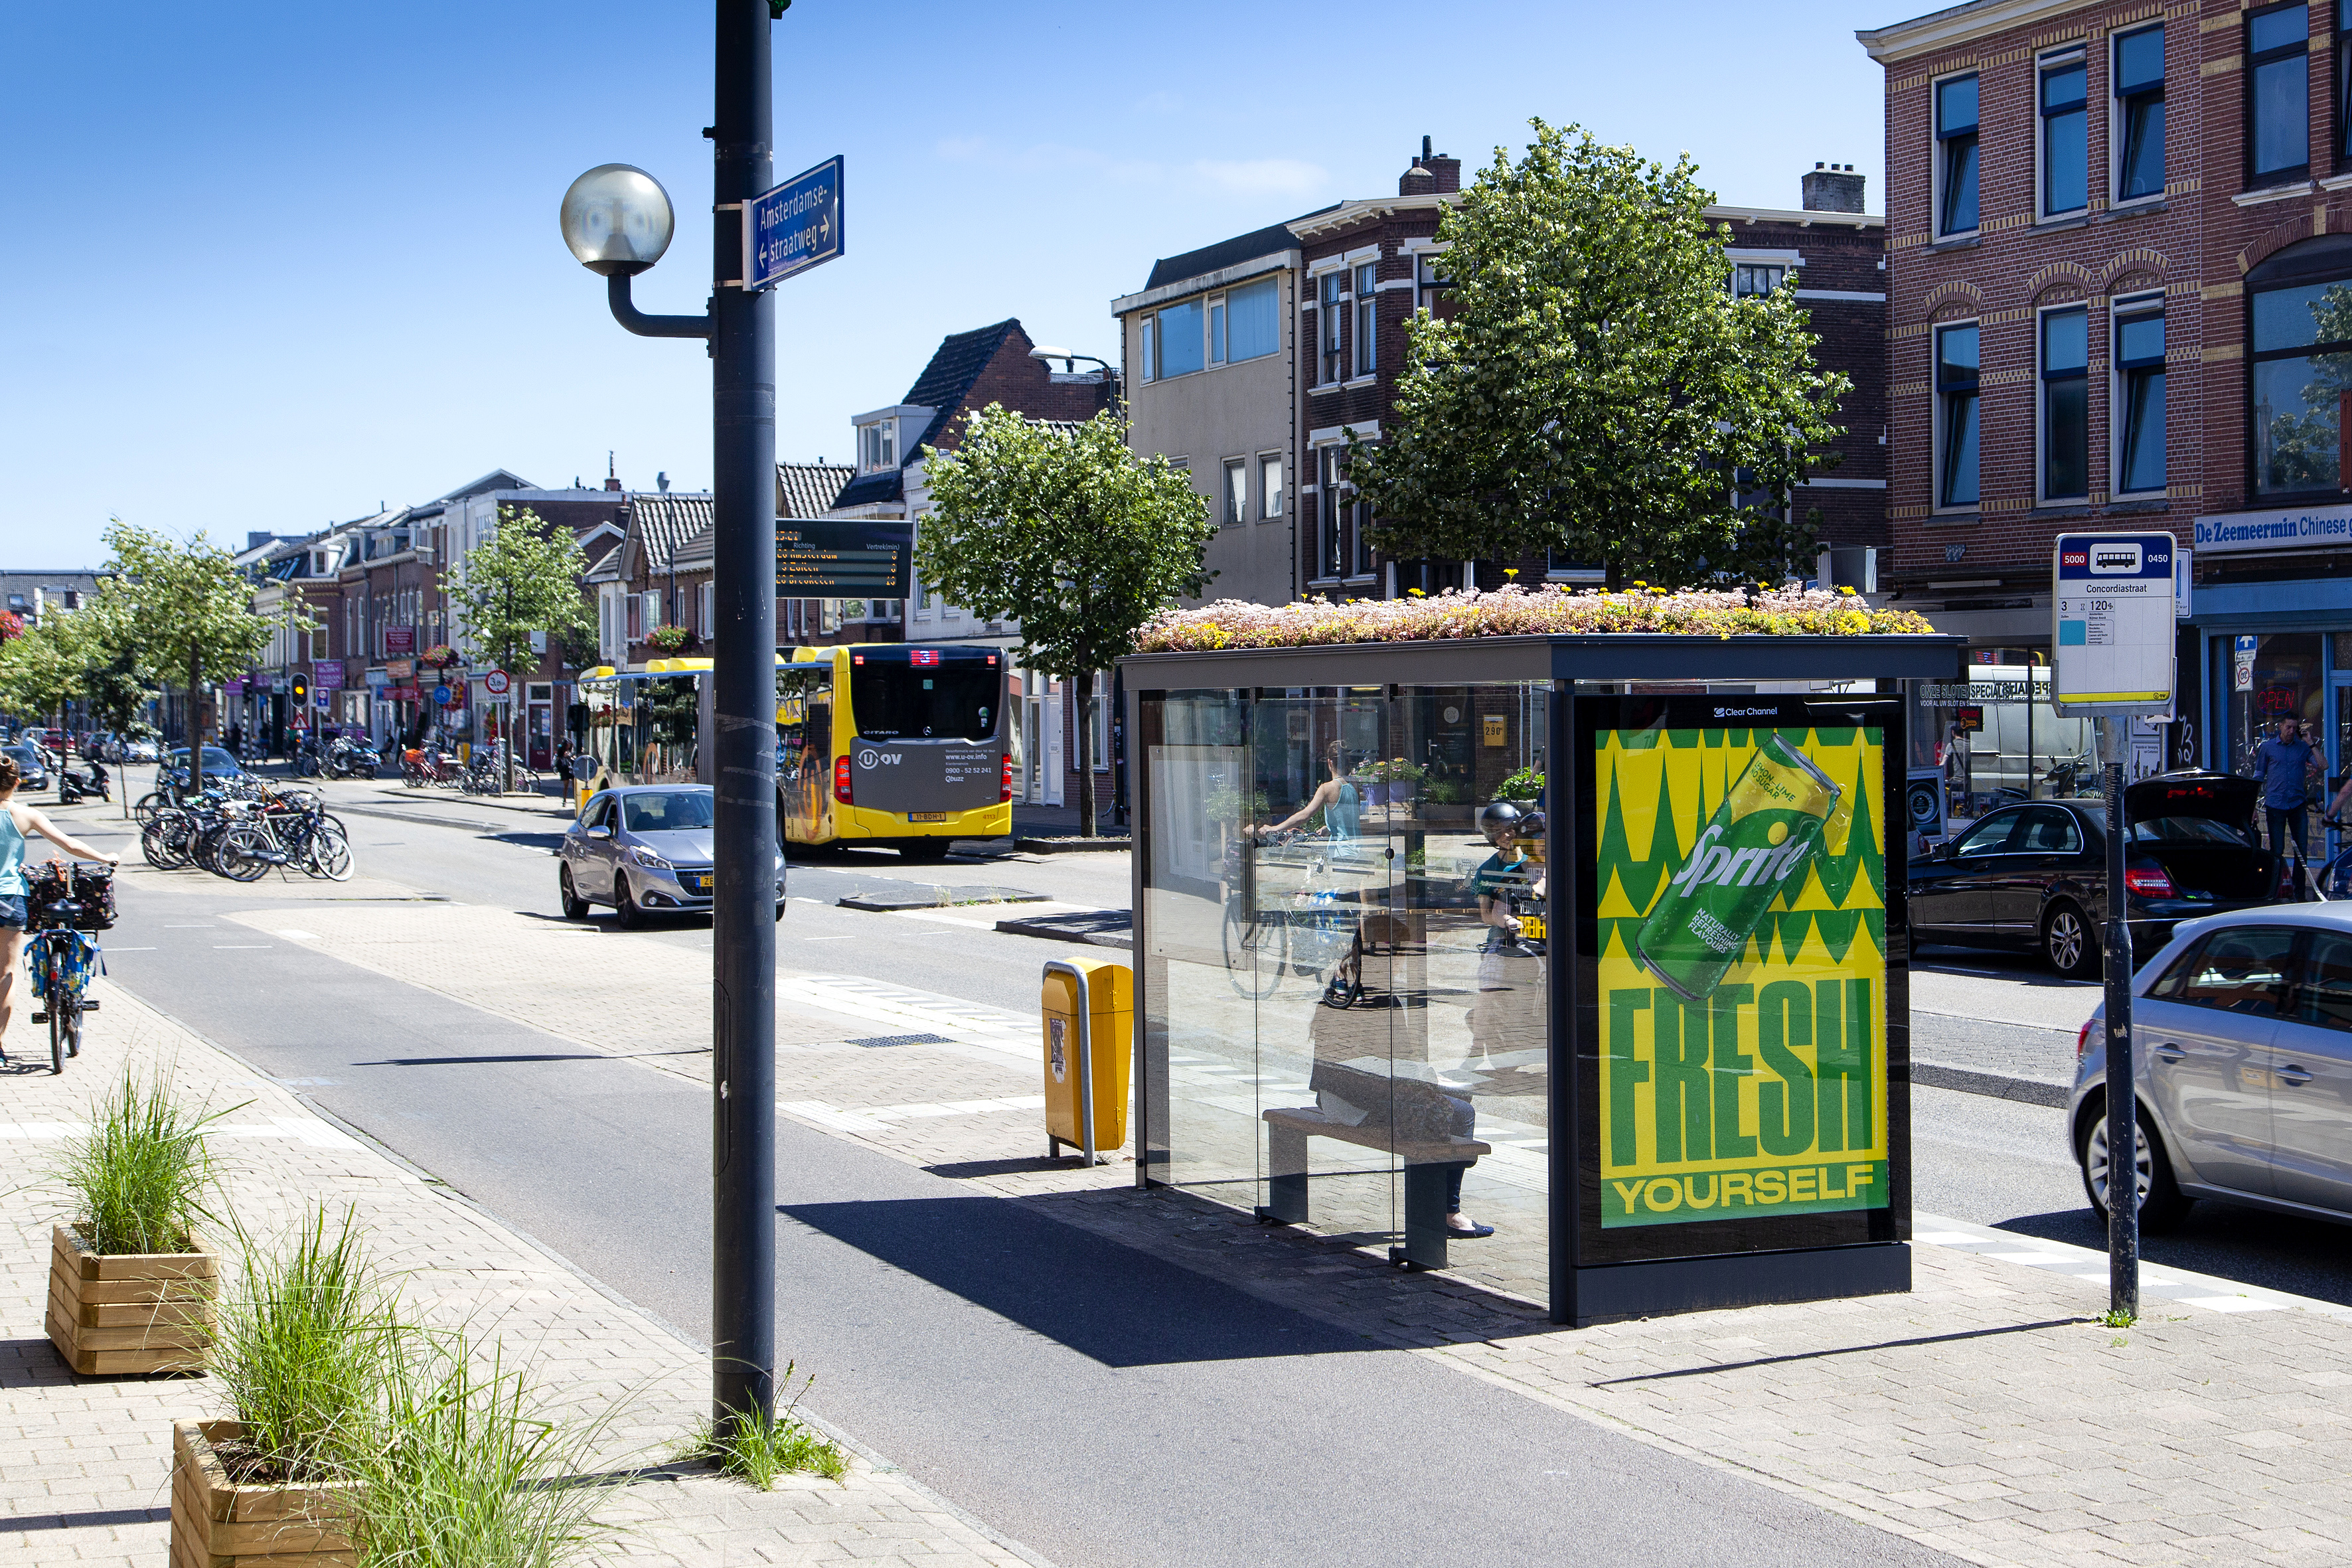 Green roof on bus shelter Utrecht 